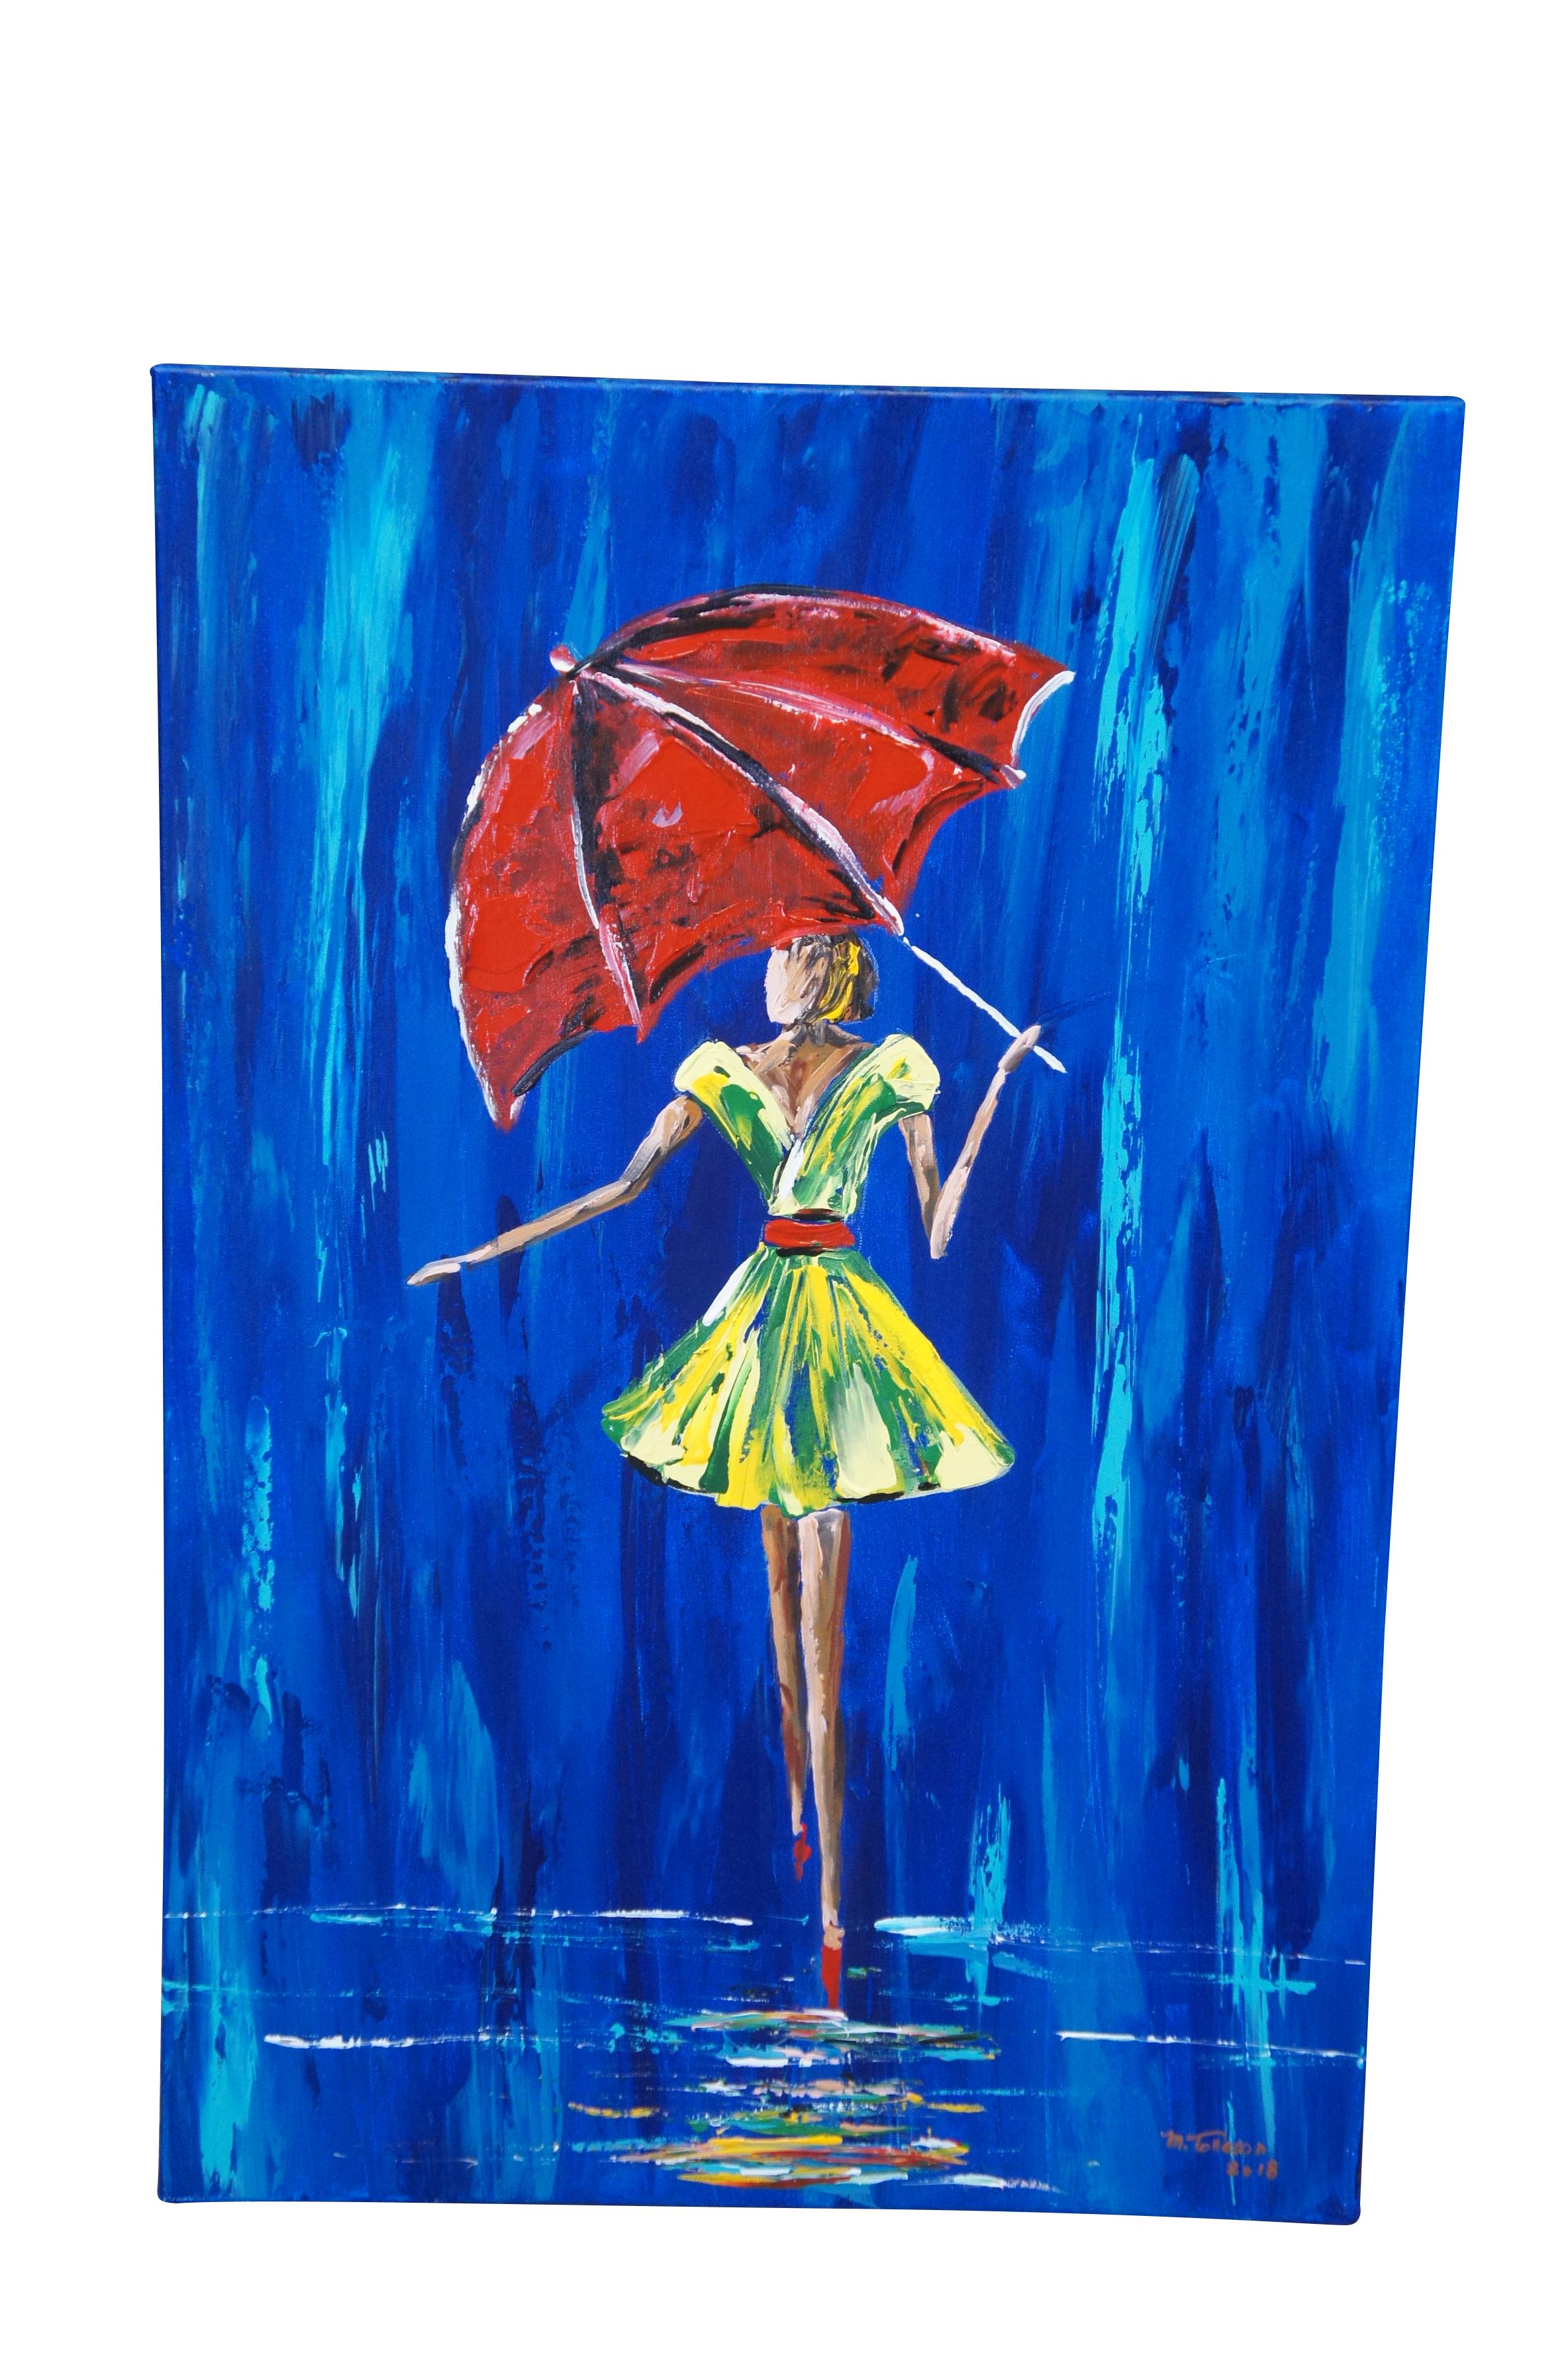 Zwei Ölgemälde auf Leinwand von Michael Tolleson Robles mit zwei weiblichen Figuren, die im Regen mit Regenschirmen spazieren gehen.  Circa 2018.  Teil der Robles Rain Collection'S.  

Michael Tolleson Robles, ein Künstler, Autor und Fürsprecher mit